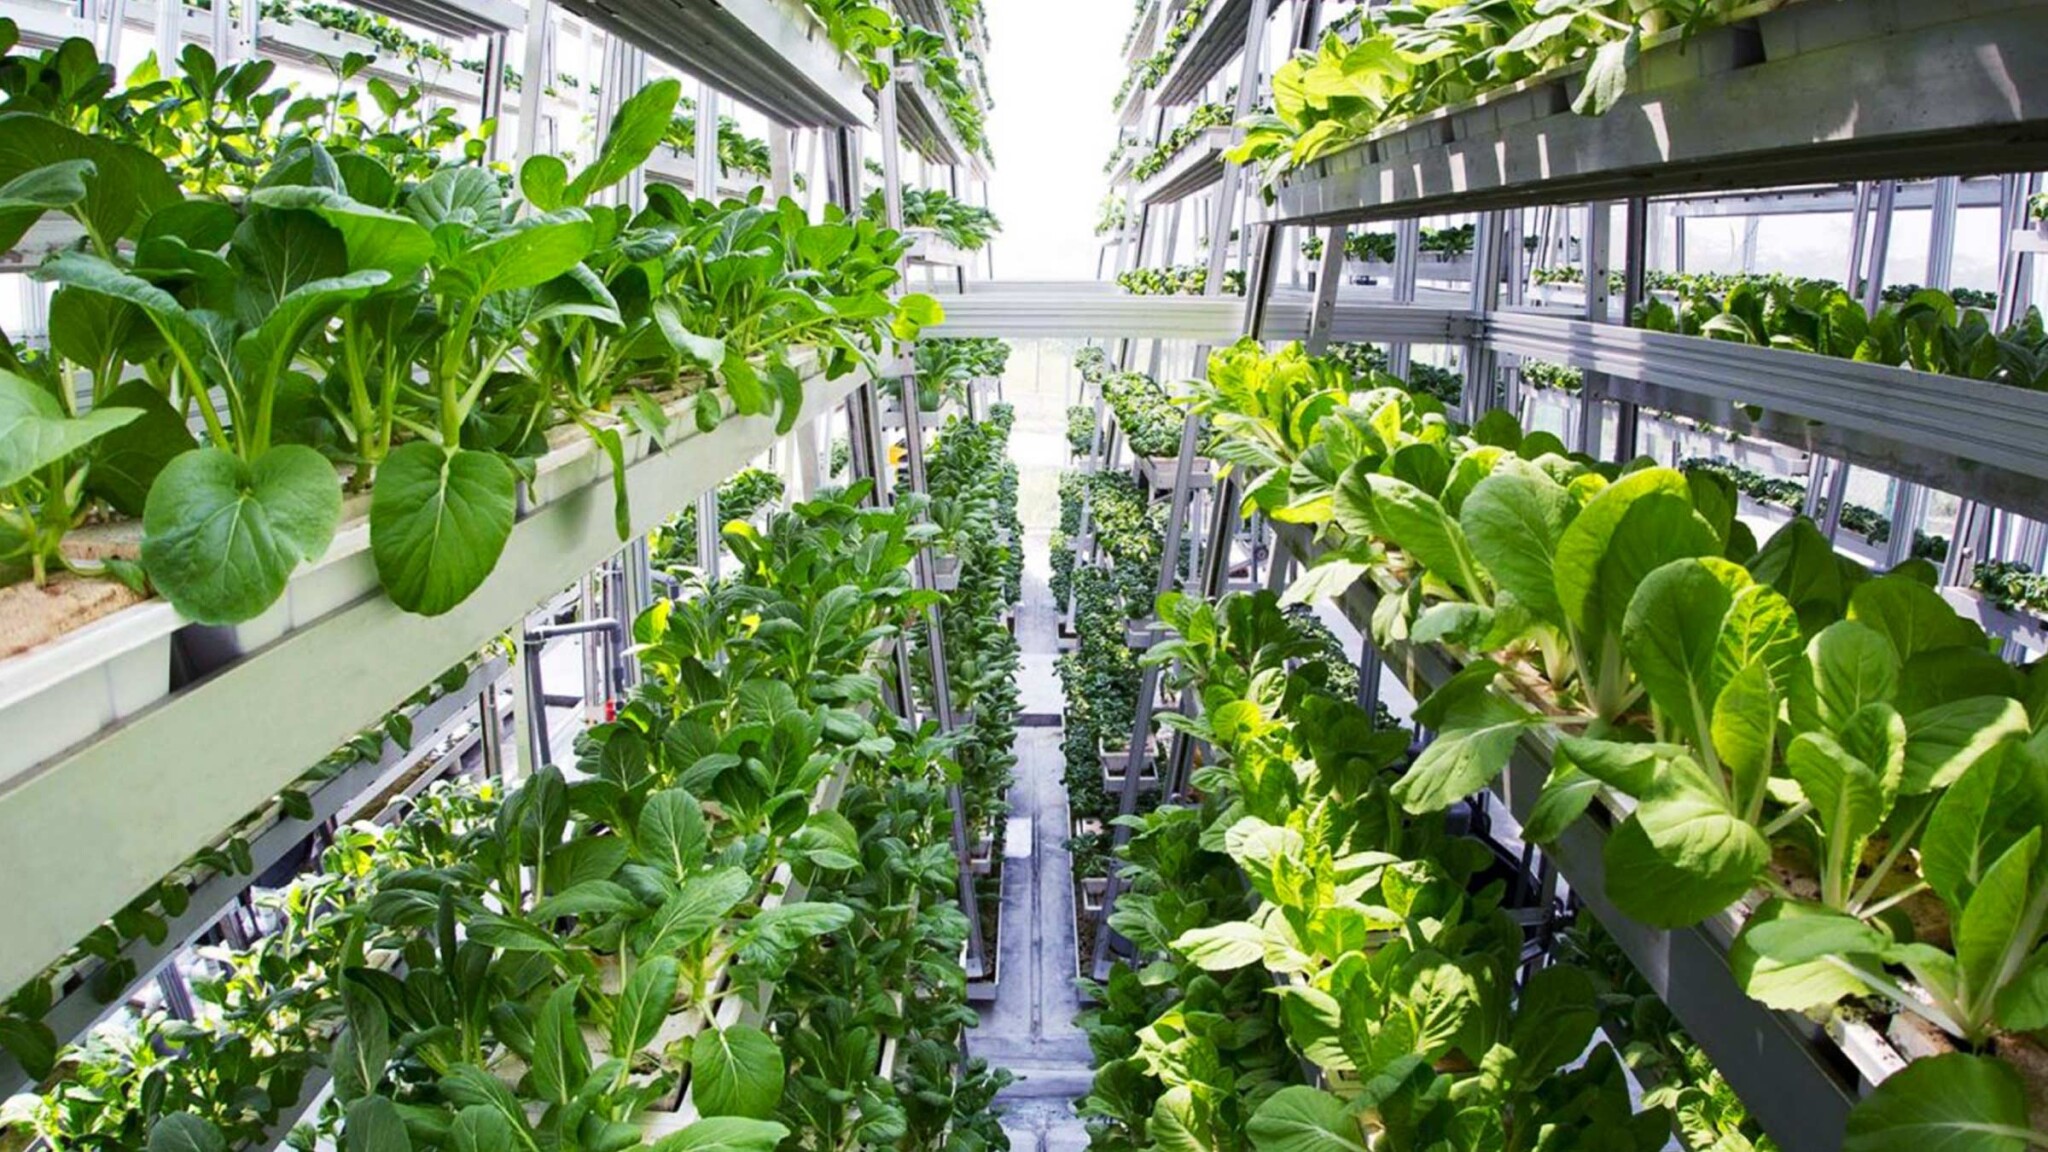 Zelenina z továrny. Vertikální farmy rostou v Dubaji, v Břeclavi i v Praze